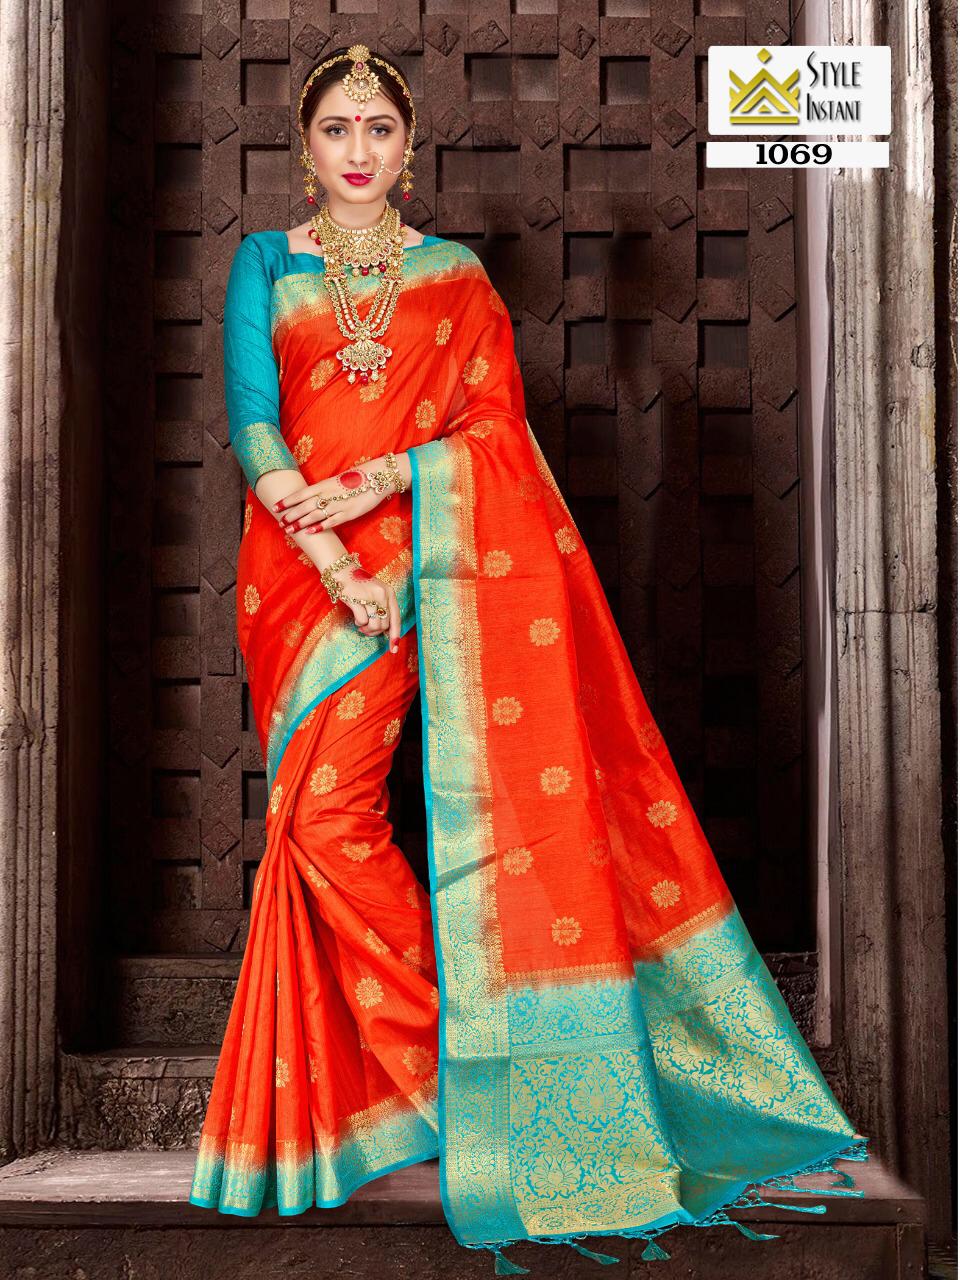 Style Instant Banarasi Silk 1069